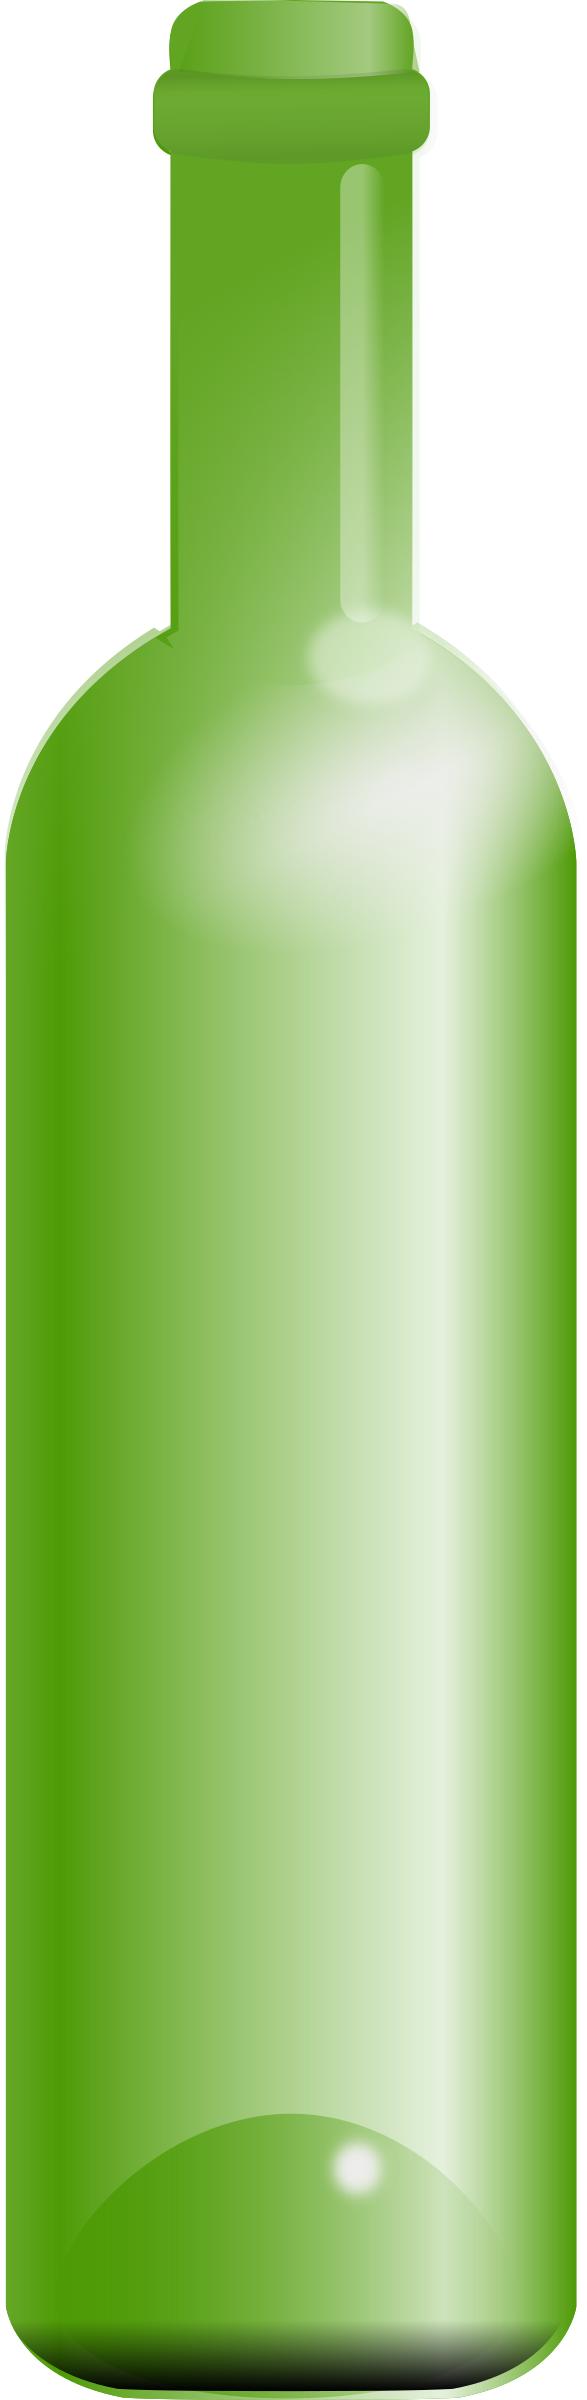 empty green bottle png